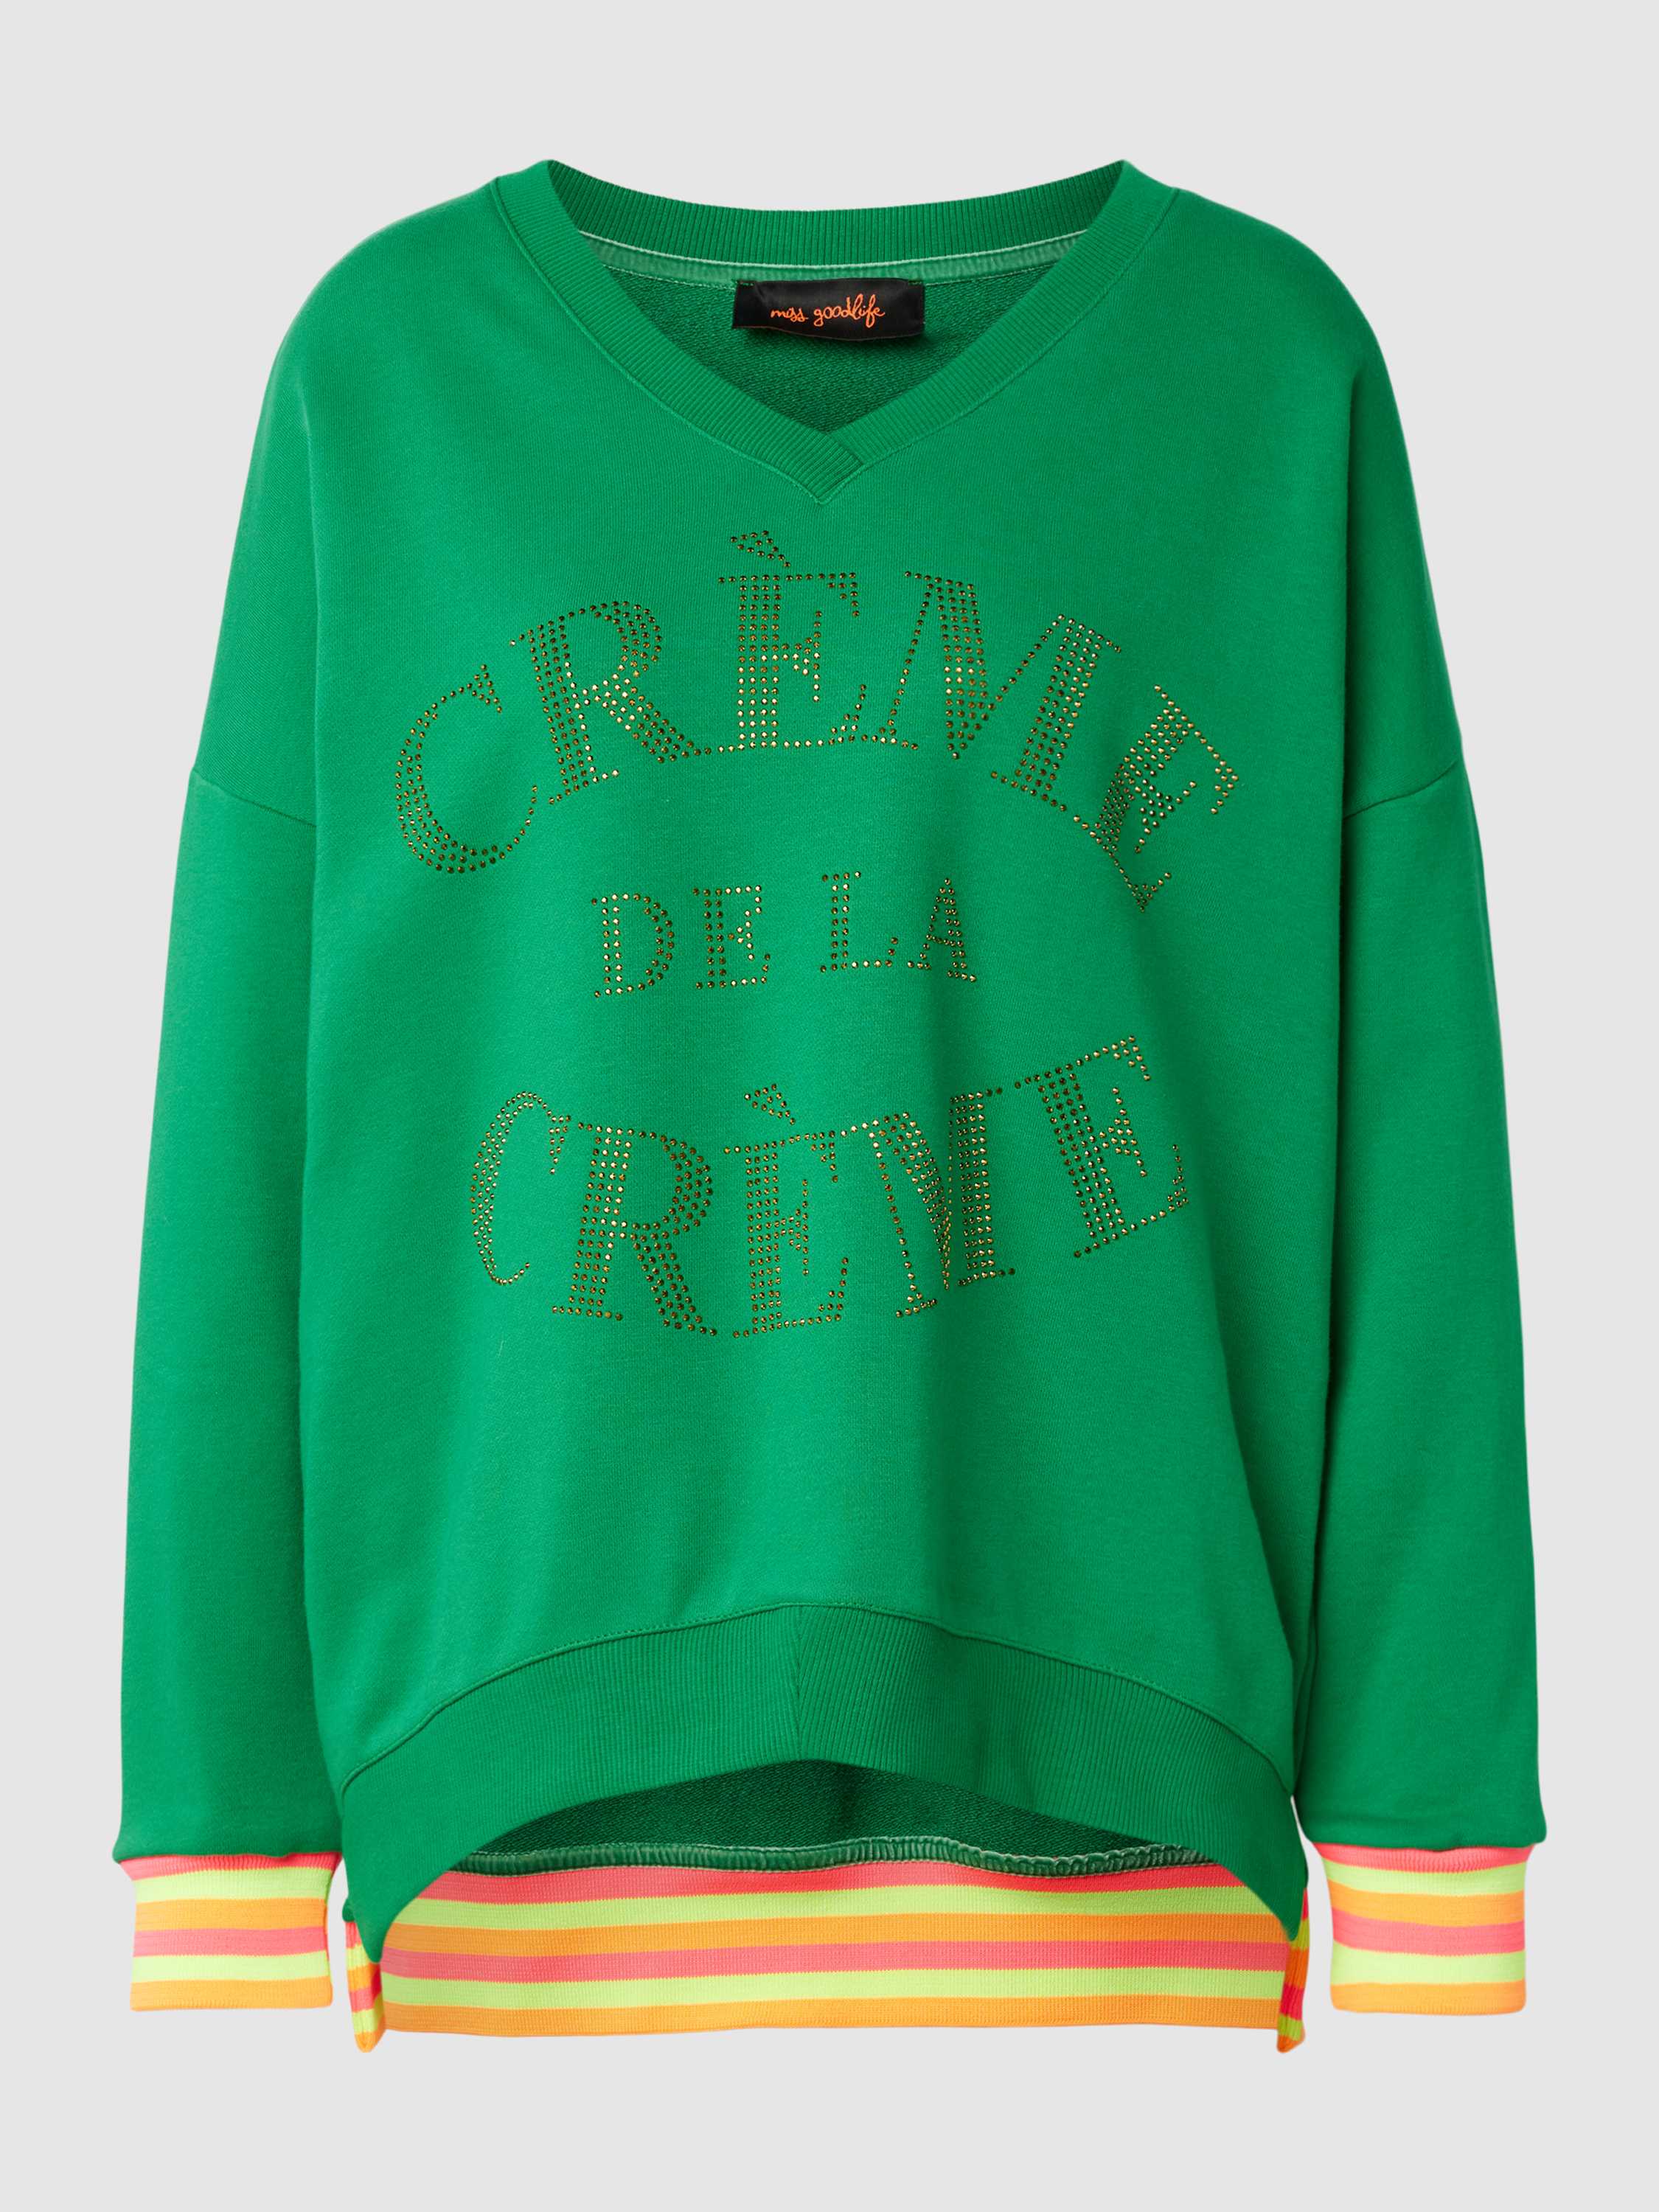 Miss goodlife Oversized sweatshirt met statement in strass-steentjes model 'Creme de la Creme'